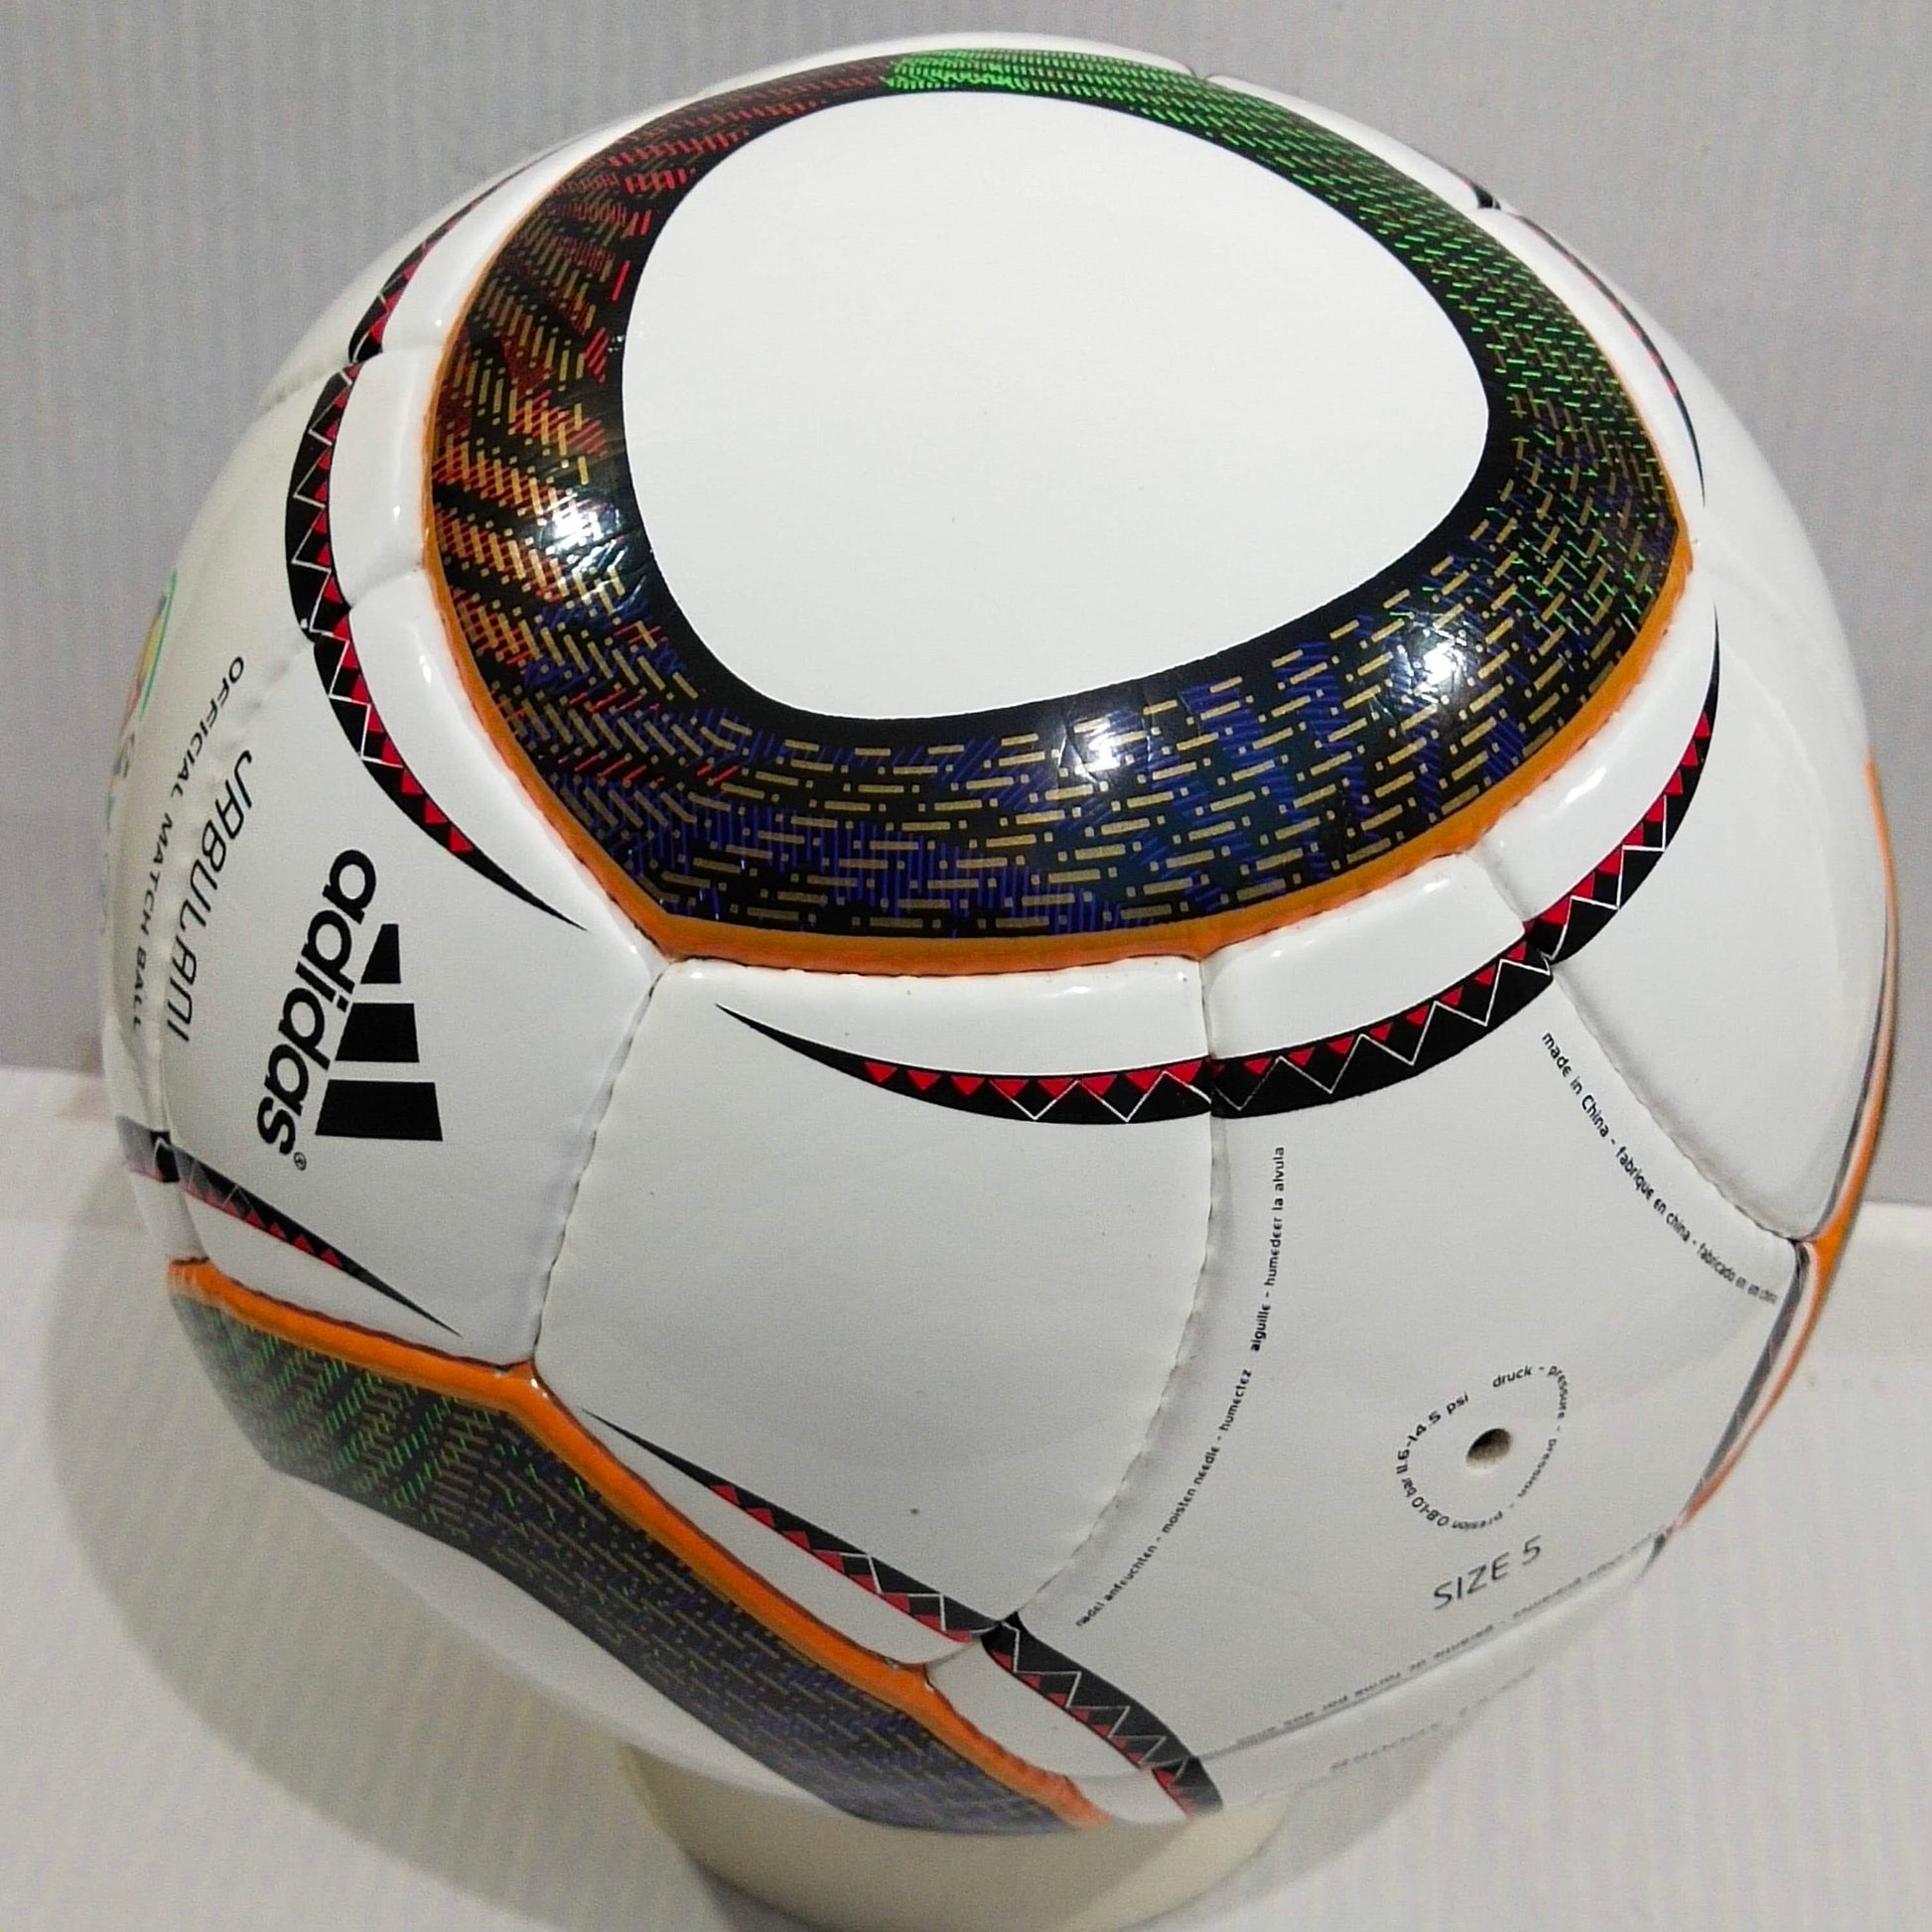 Adidas Jabulani Match Ball | 2010 FIFA World Cup Ball | SIZE 5 06